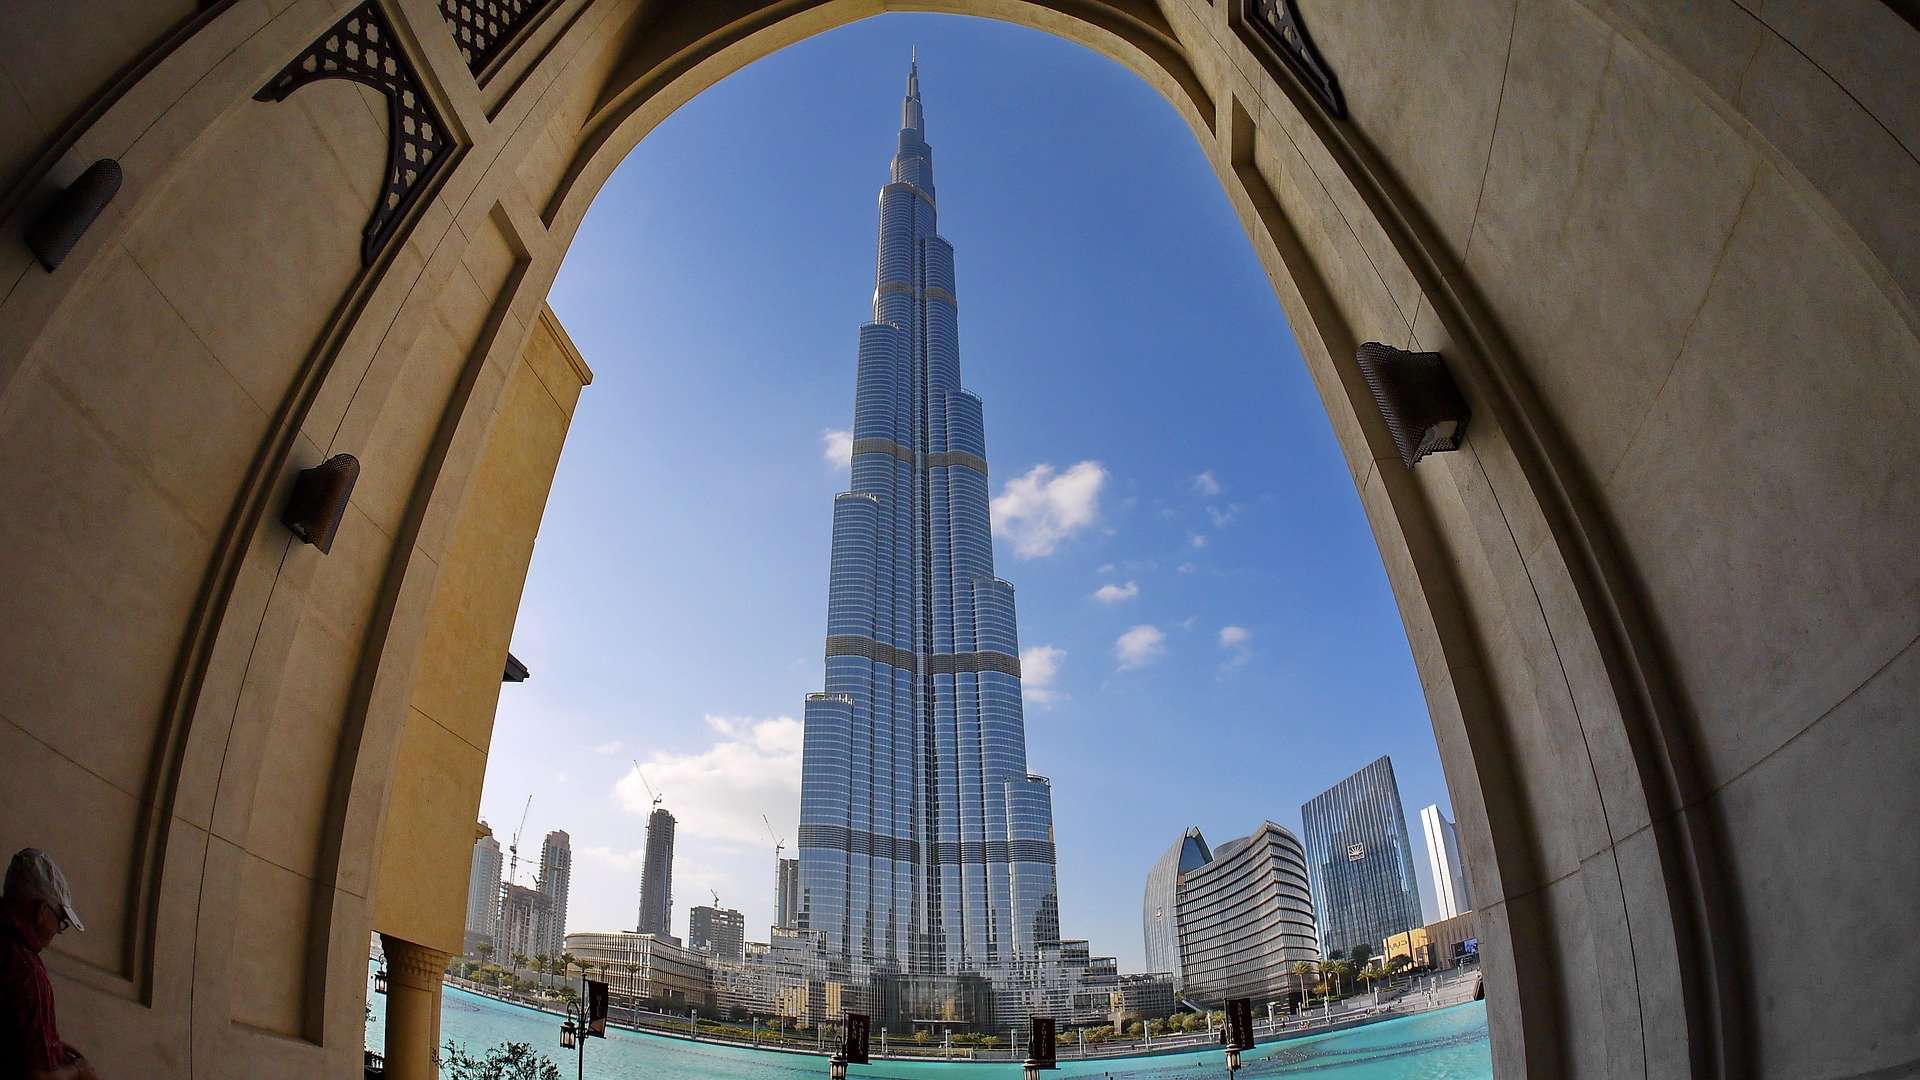 Interesting facts abotu Dubai - Burj Khalifa through doors